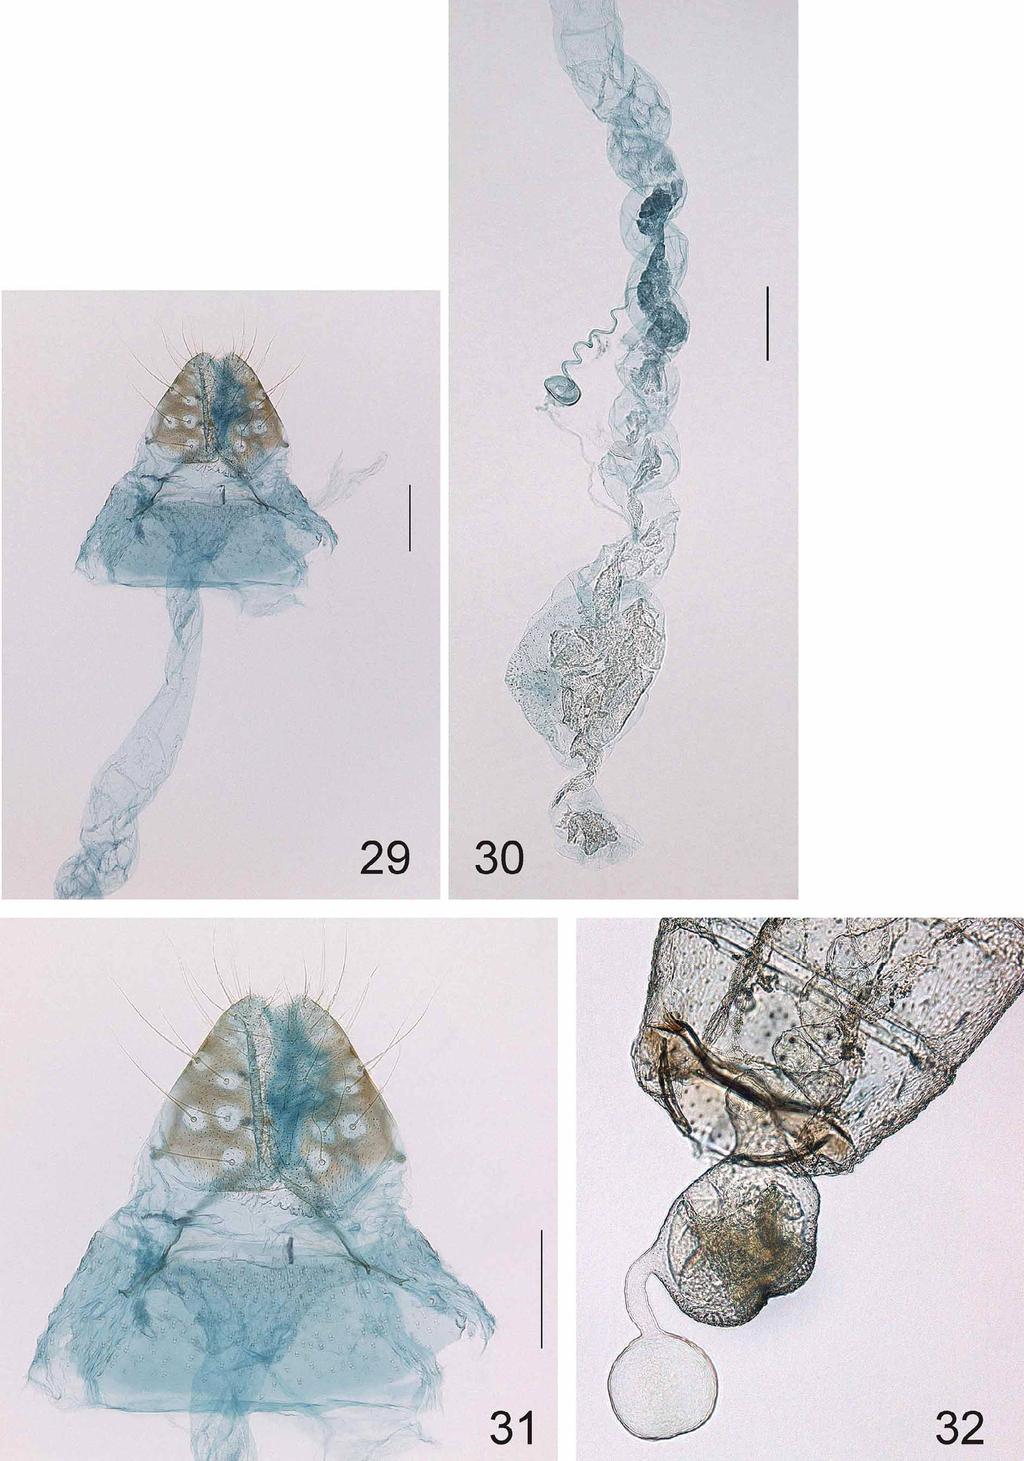 FIGURES 29 32. Urodeta acerba, sp. n., female genitalia. 29, caudal part; 30, ductus and corpus bursae; 31, caudal part, enlarged. Paratype. Gen. prep.